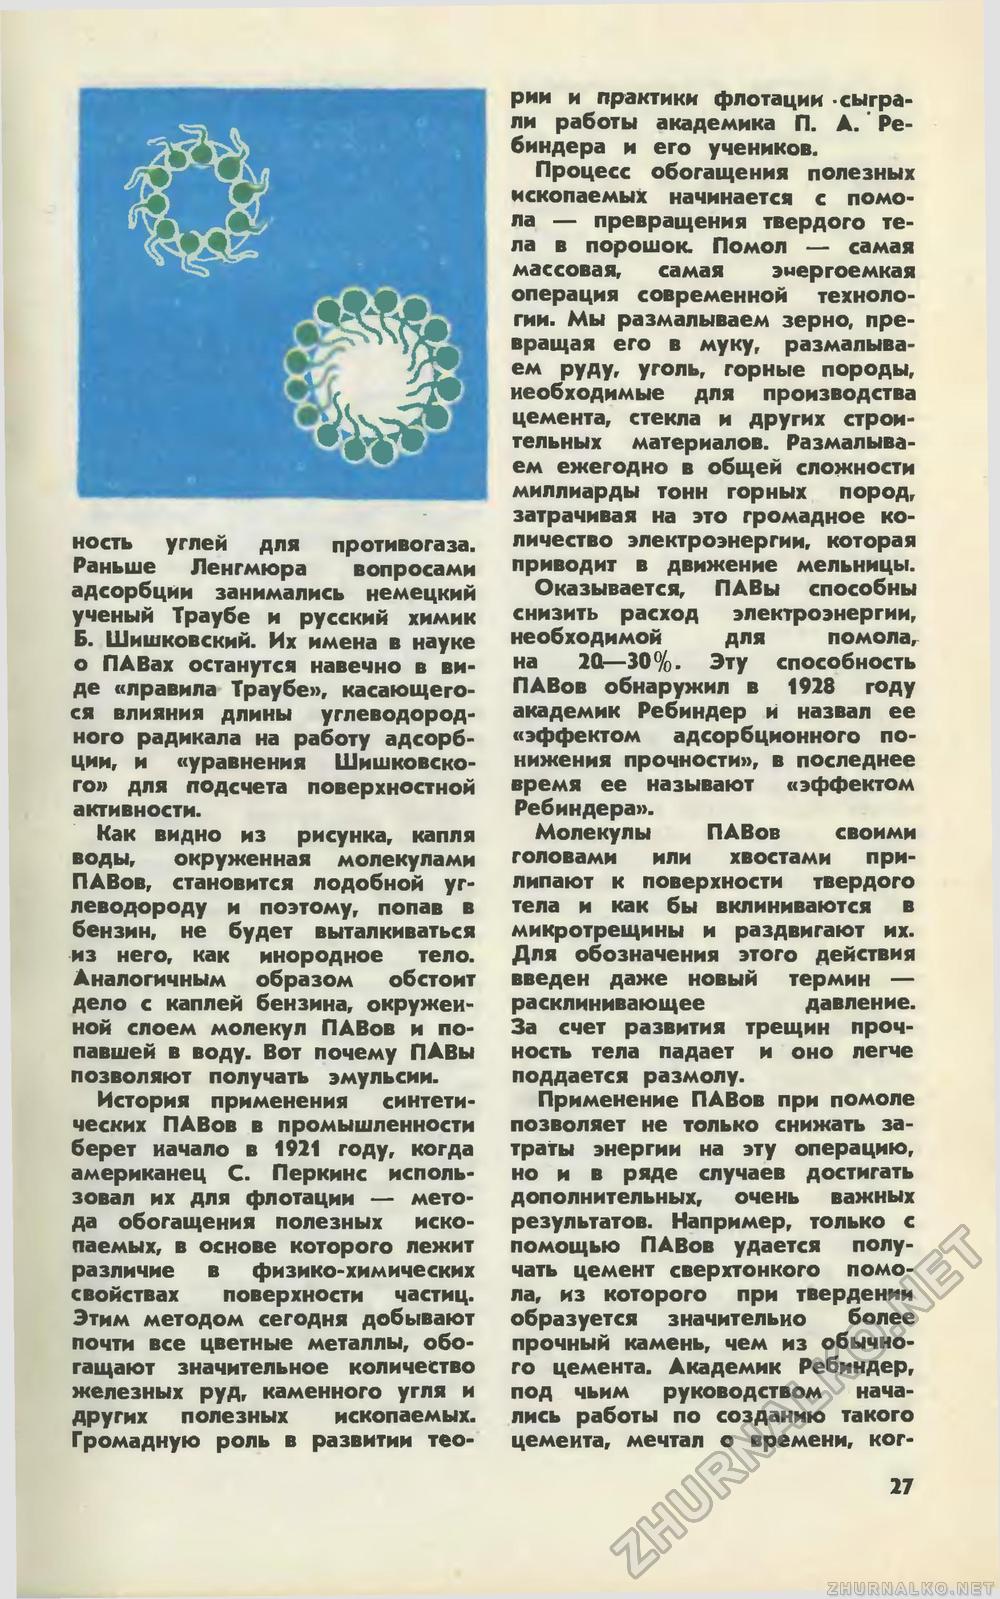   1978-02,  29